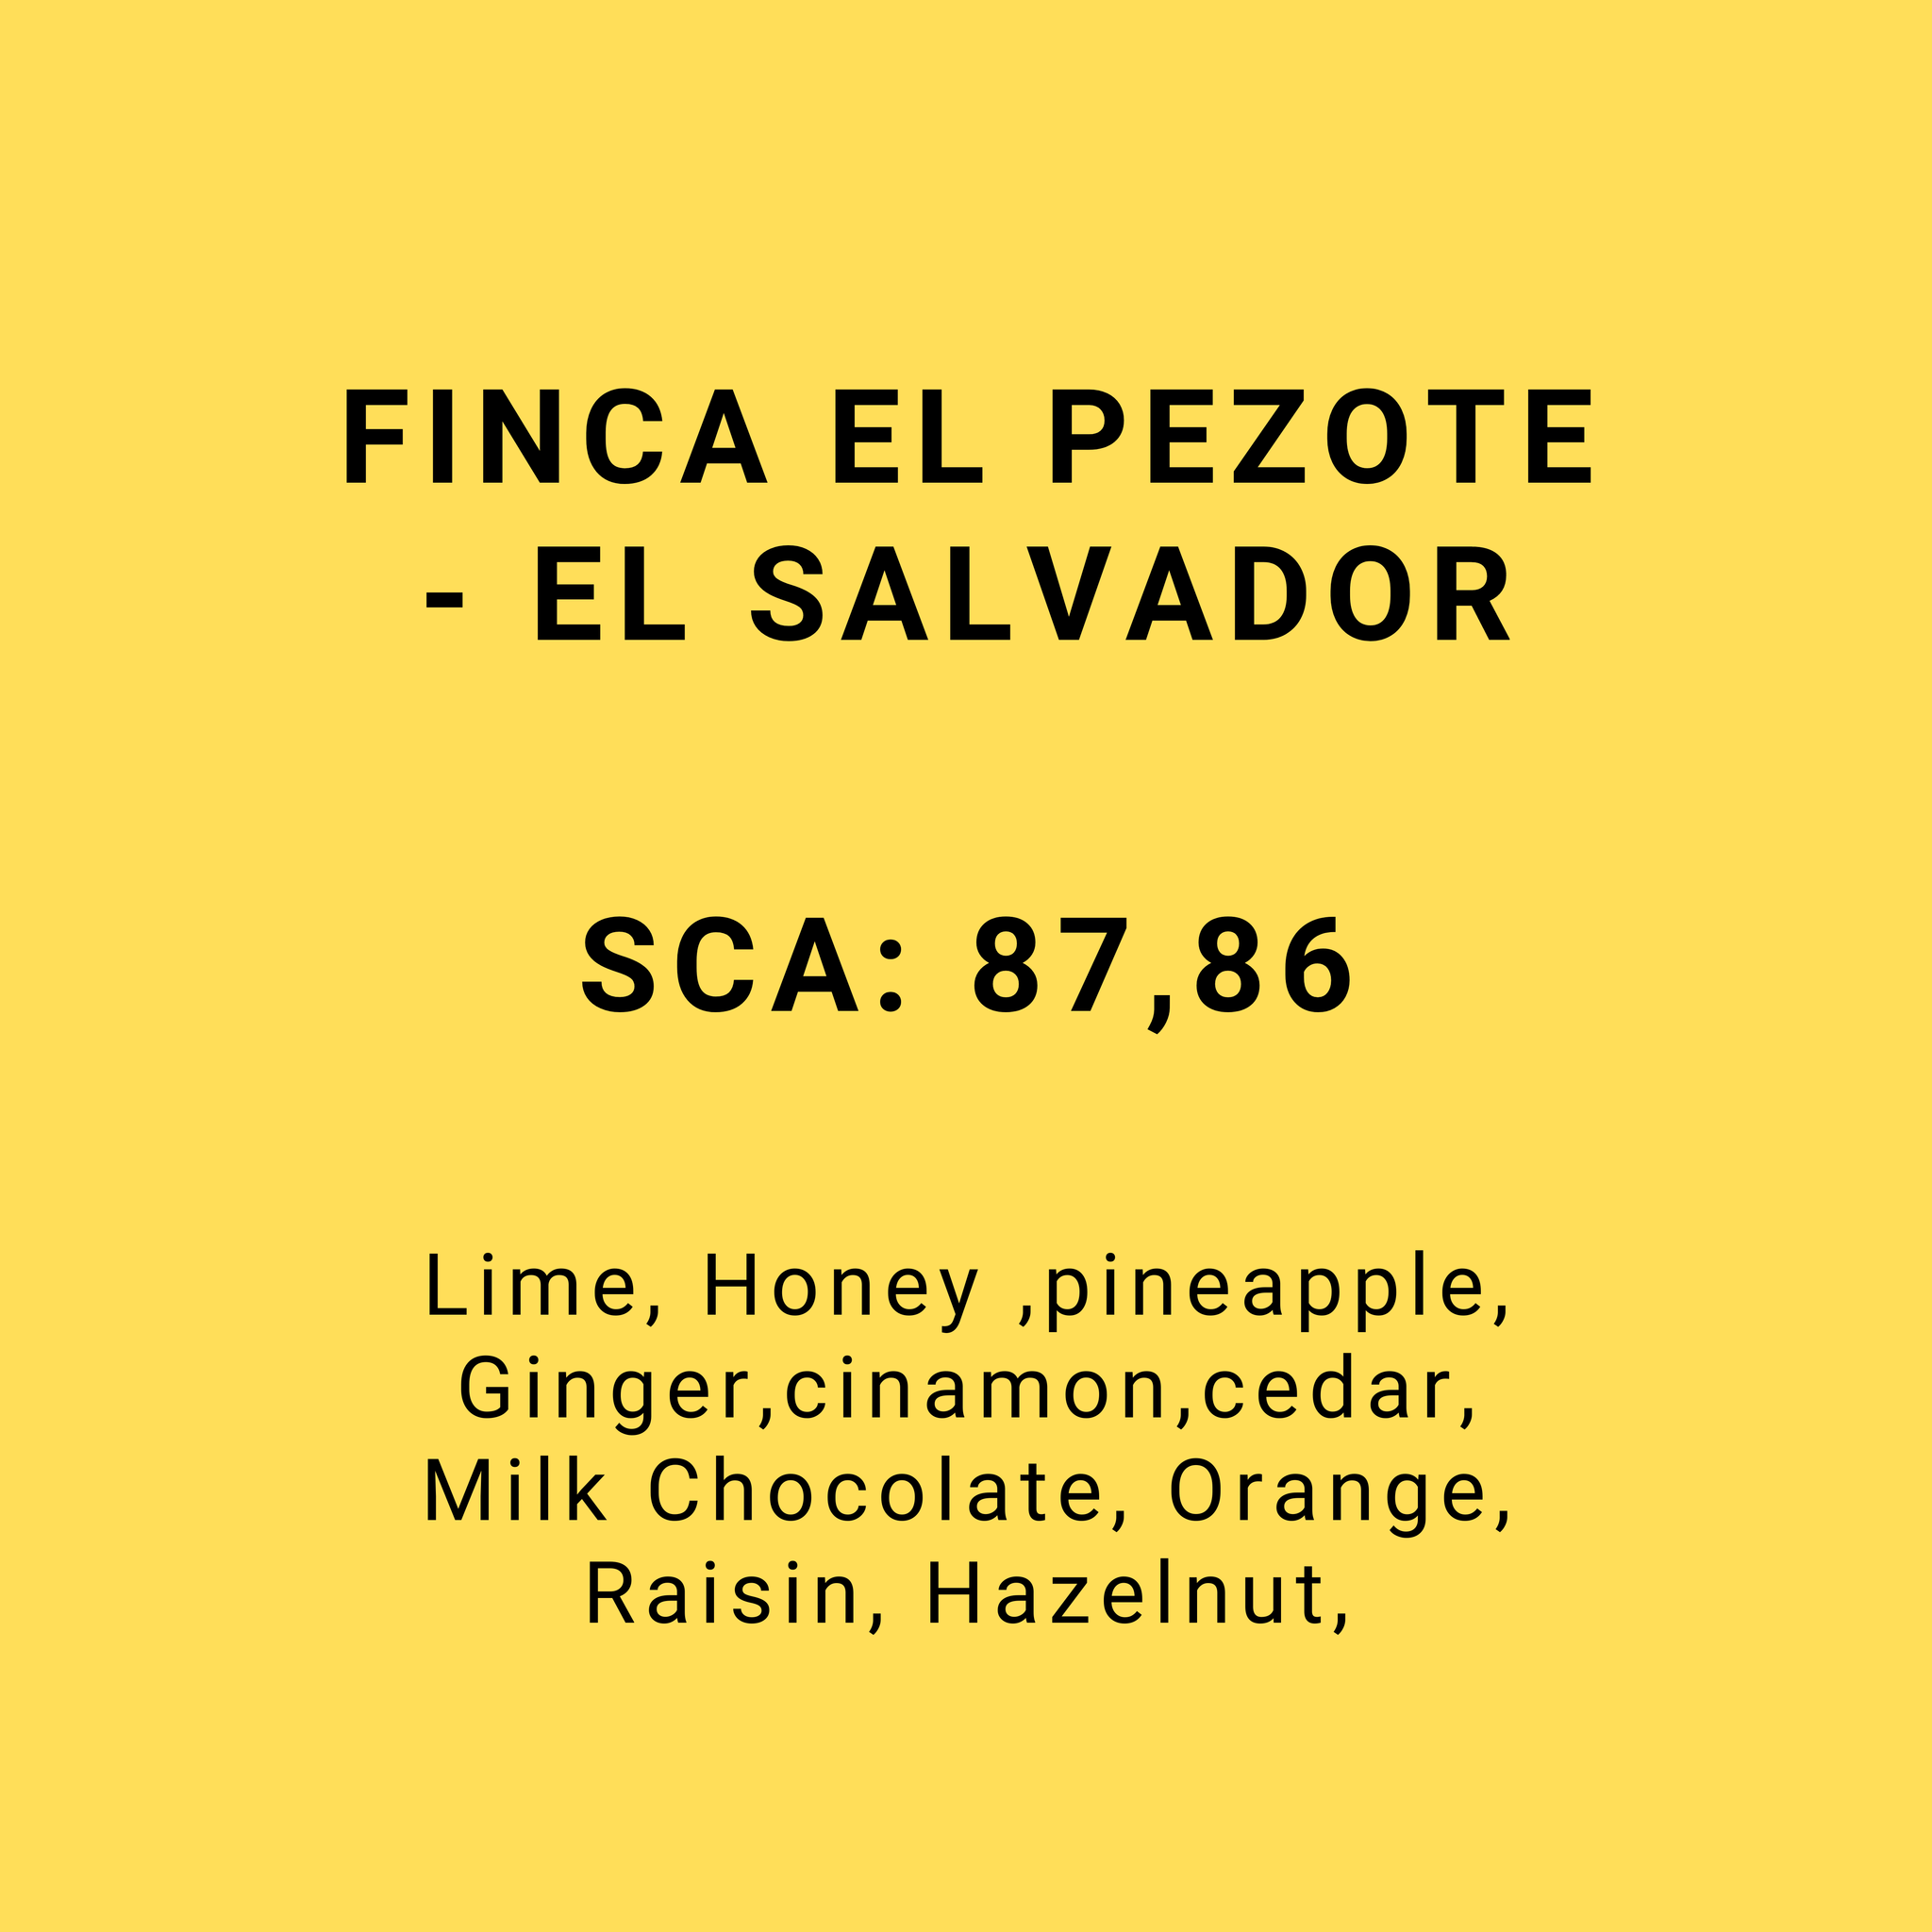 FINCA EL PEZOTE - EL SALVADOR